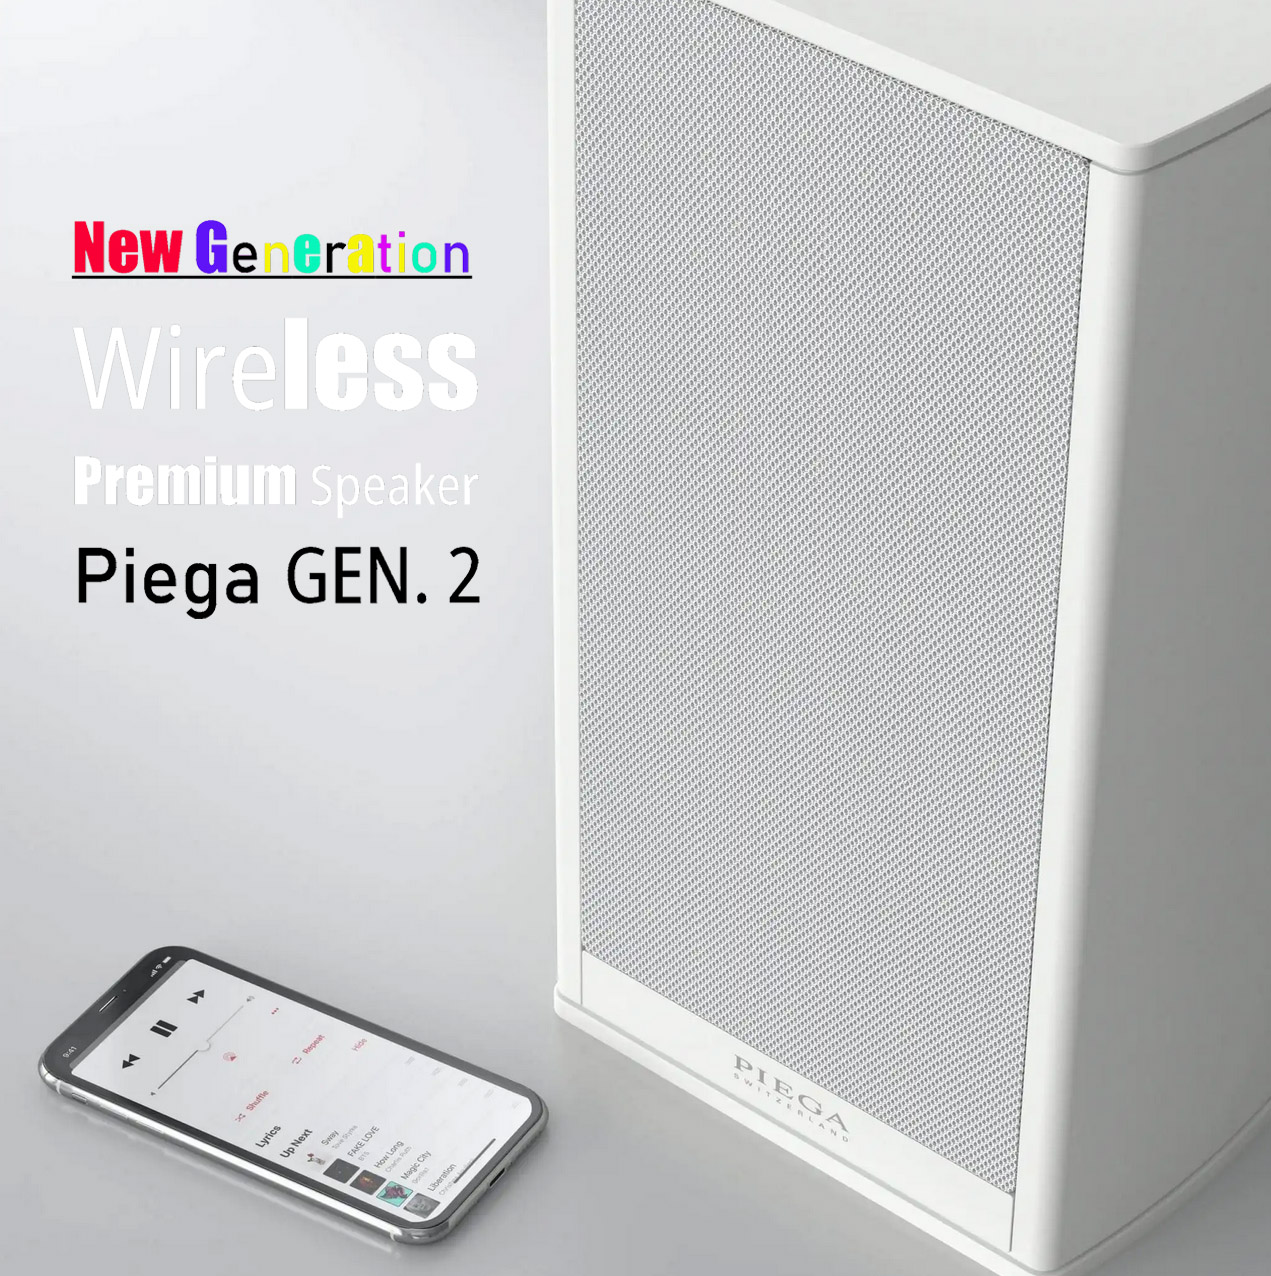 Piega "next Generation" Wireless Speaker